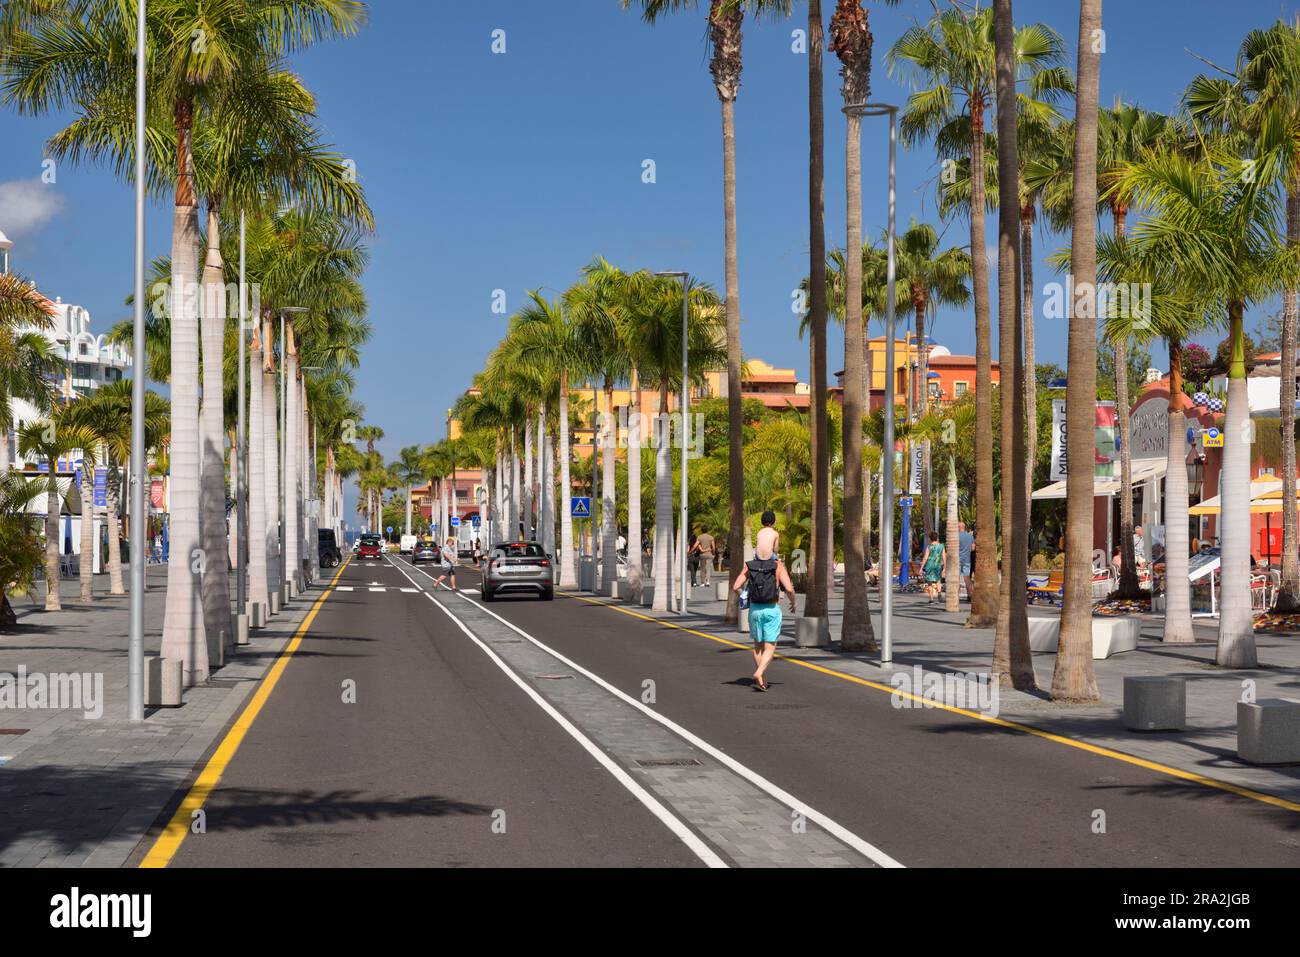 Spanien, Kanarische Inseln, Teneriffa, Las Americas, playa de Las Americas, Las Americas Avenue, touristisches Zentrum Stockfoto